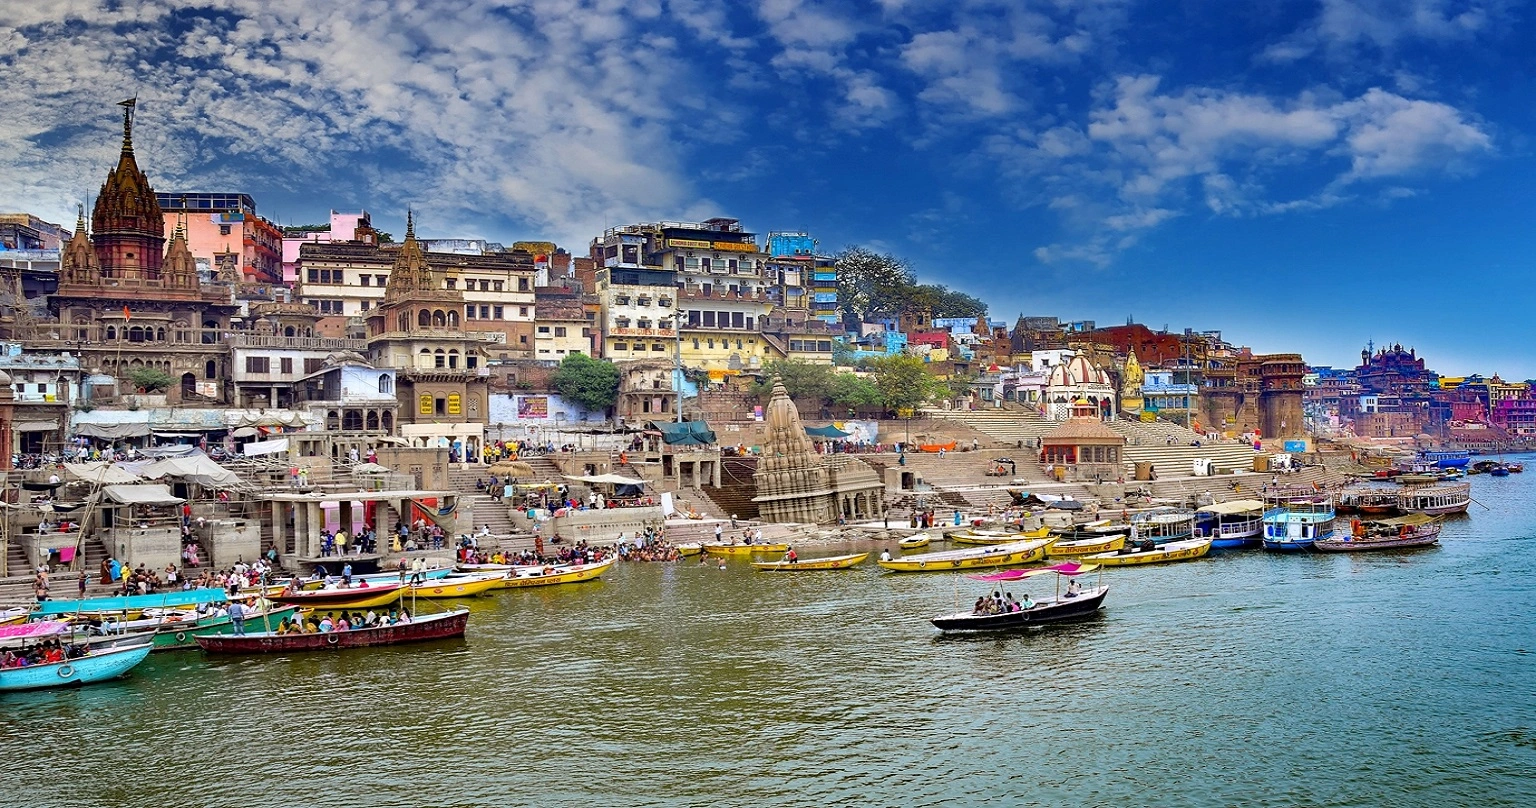 7 Reasons Why You Should Visit Varanasi